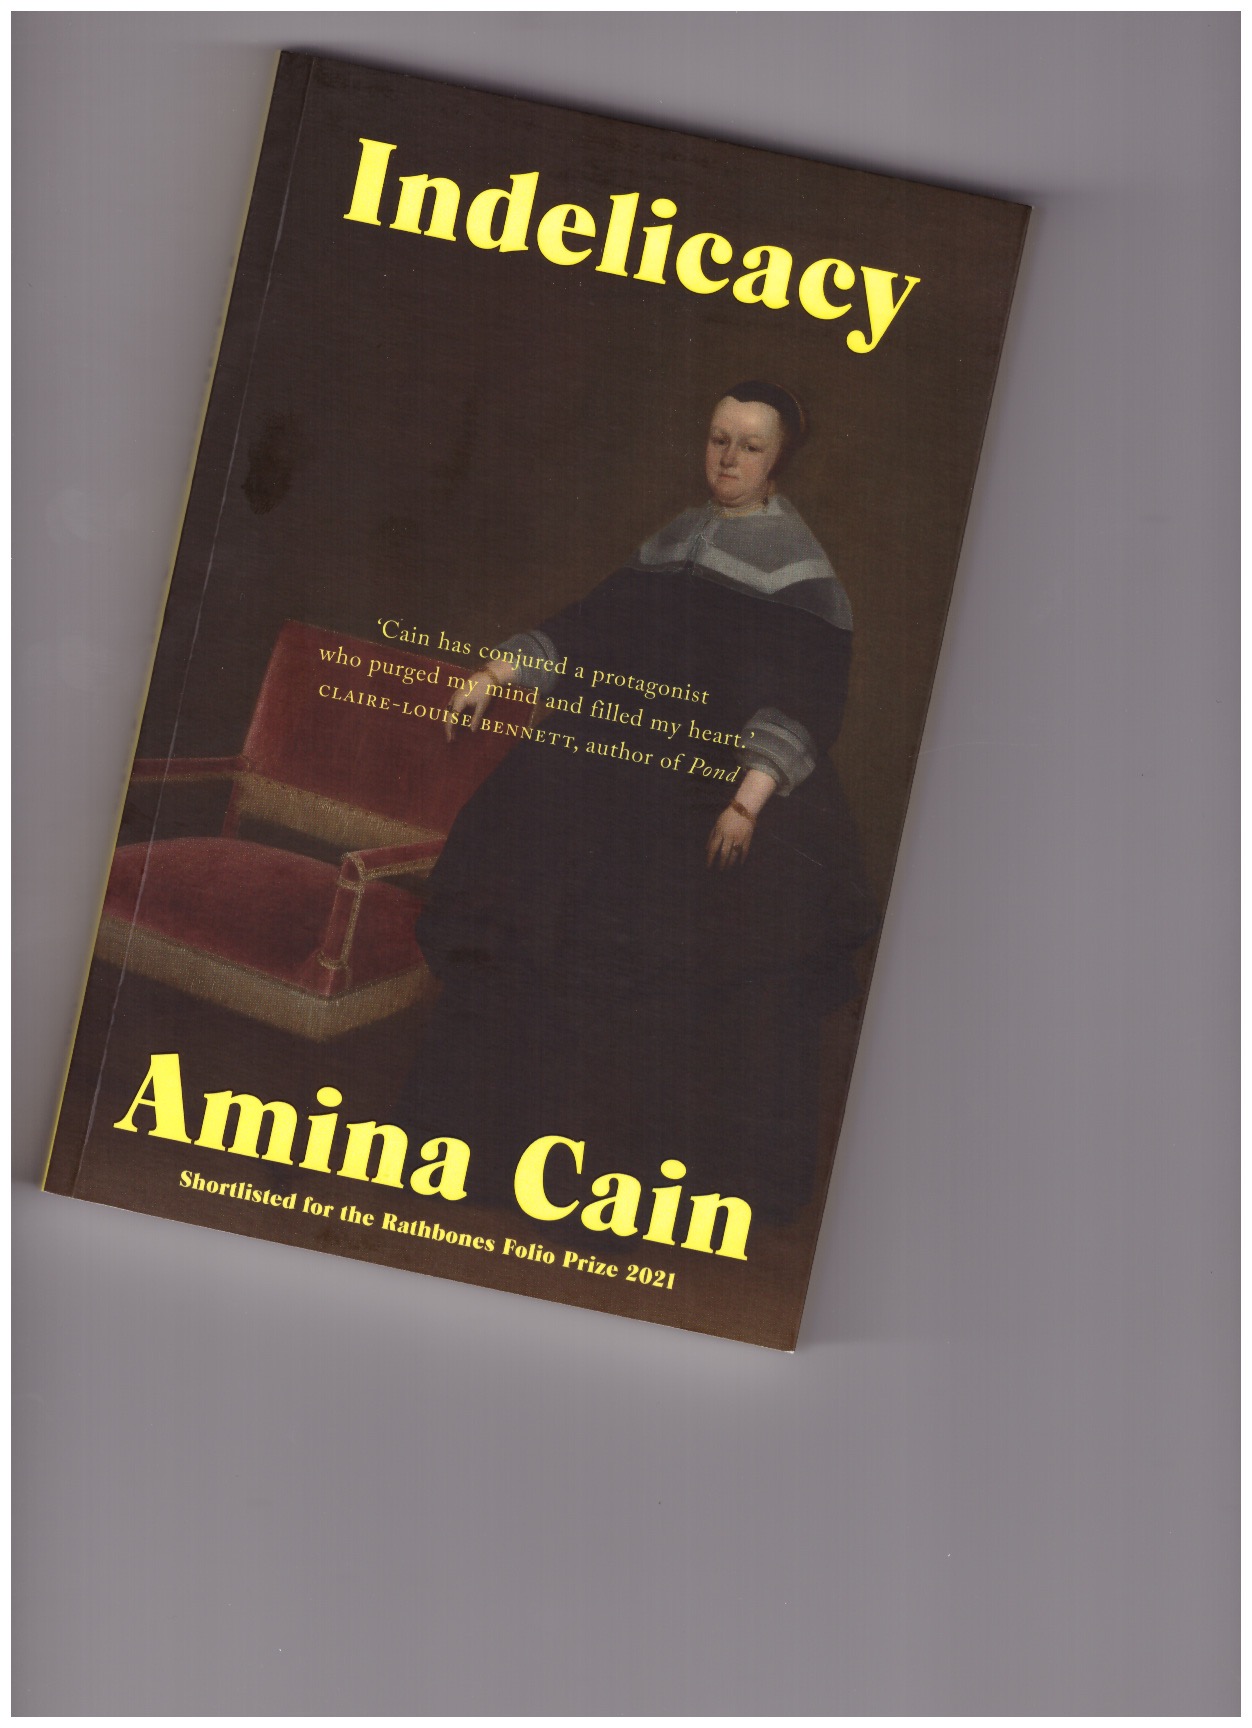 CAIN, Amina - Indelicacy